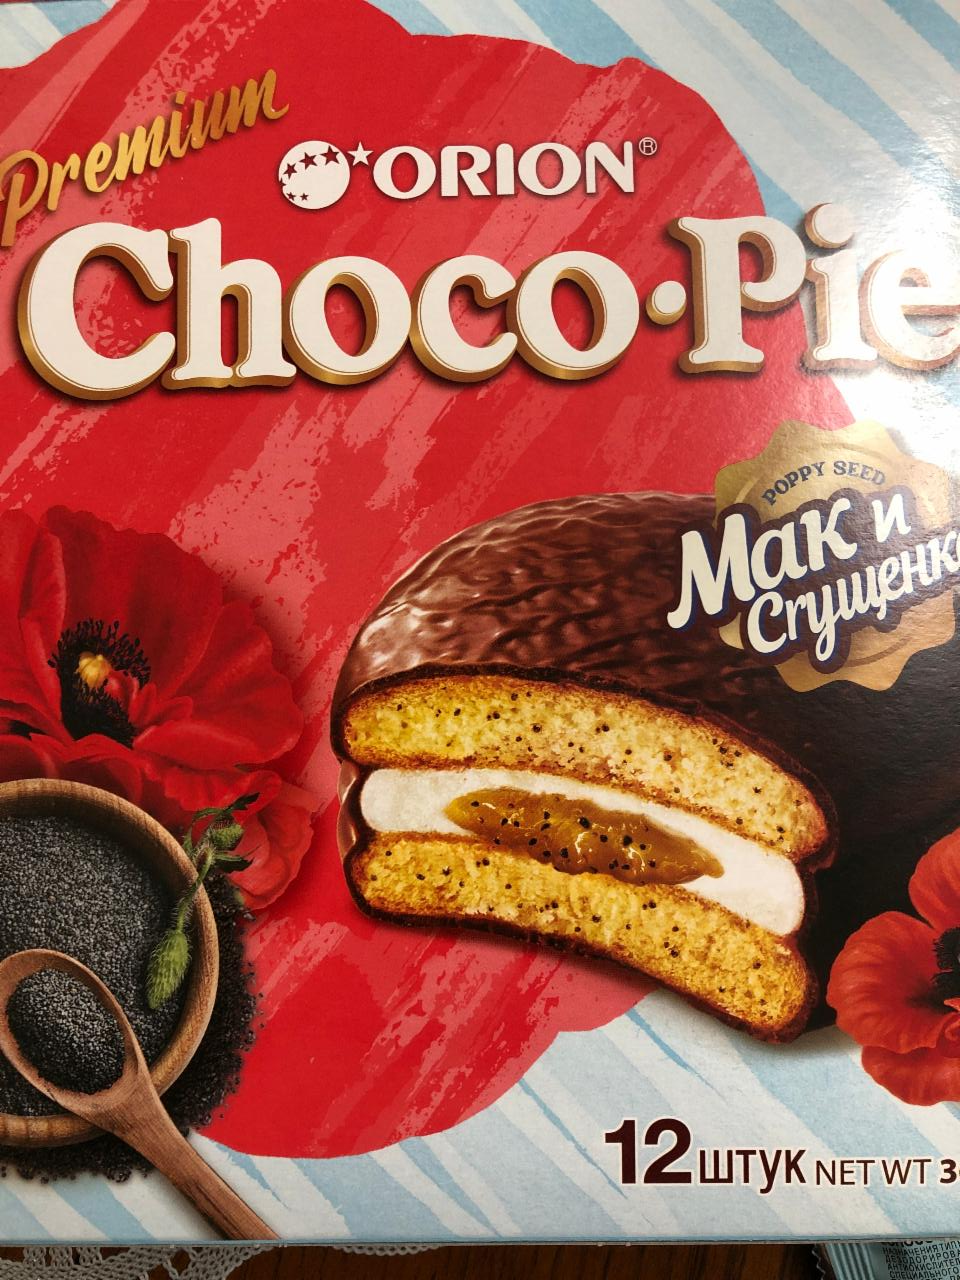 Фото - Пирожное Choco Pie Чокопай вкус мак и сгущенка Orion